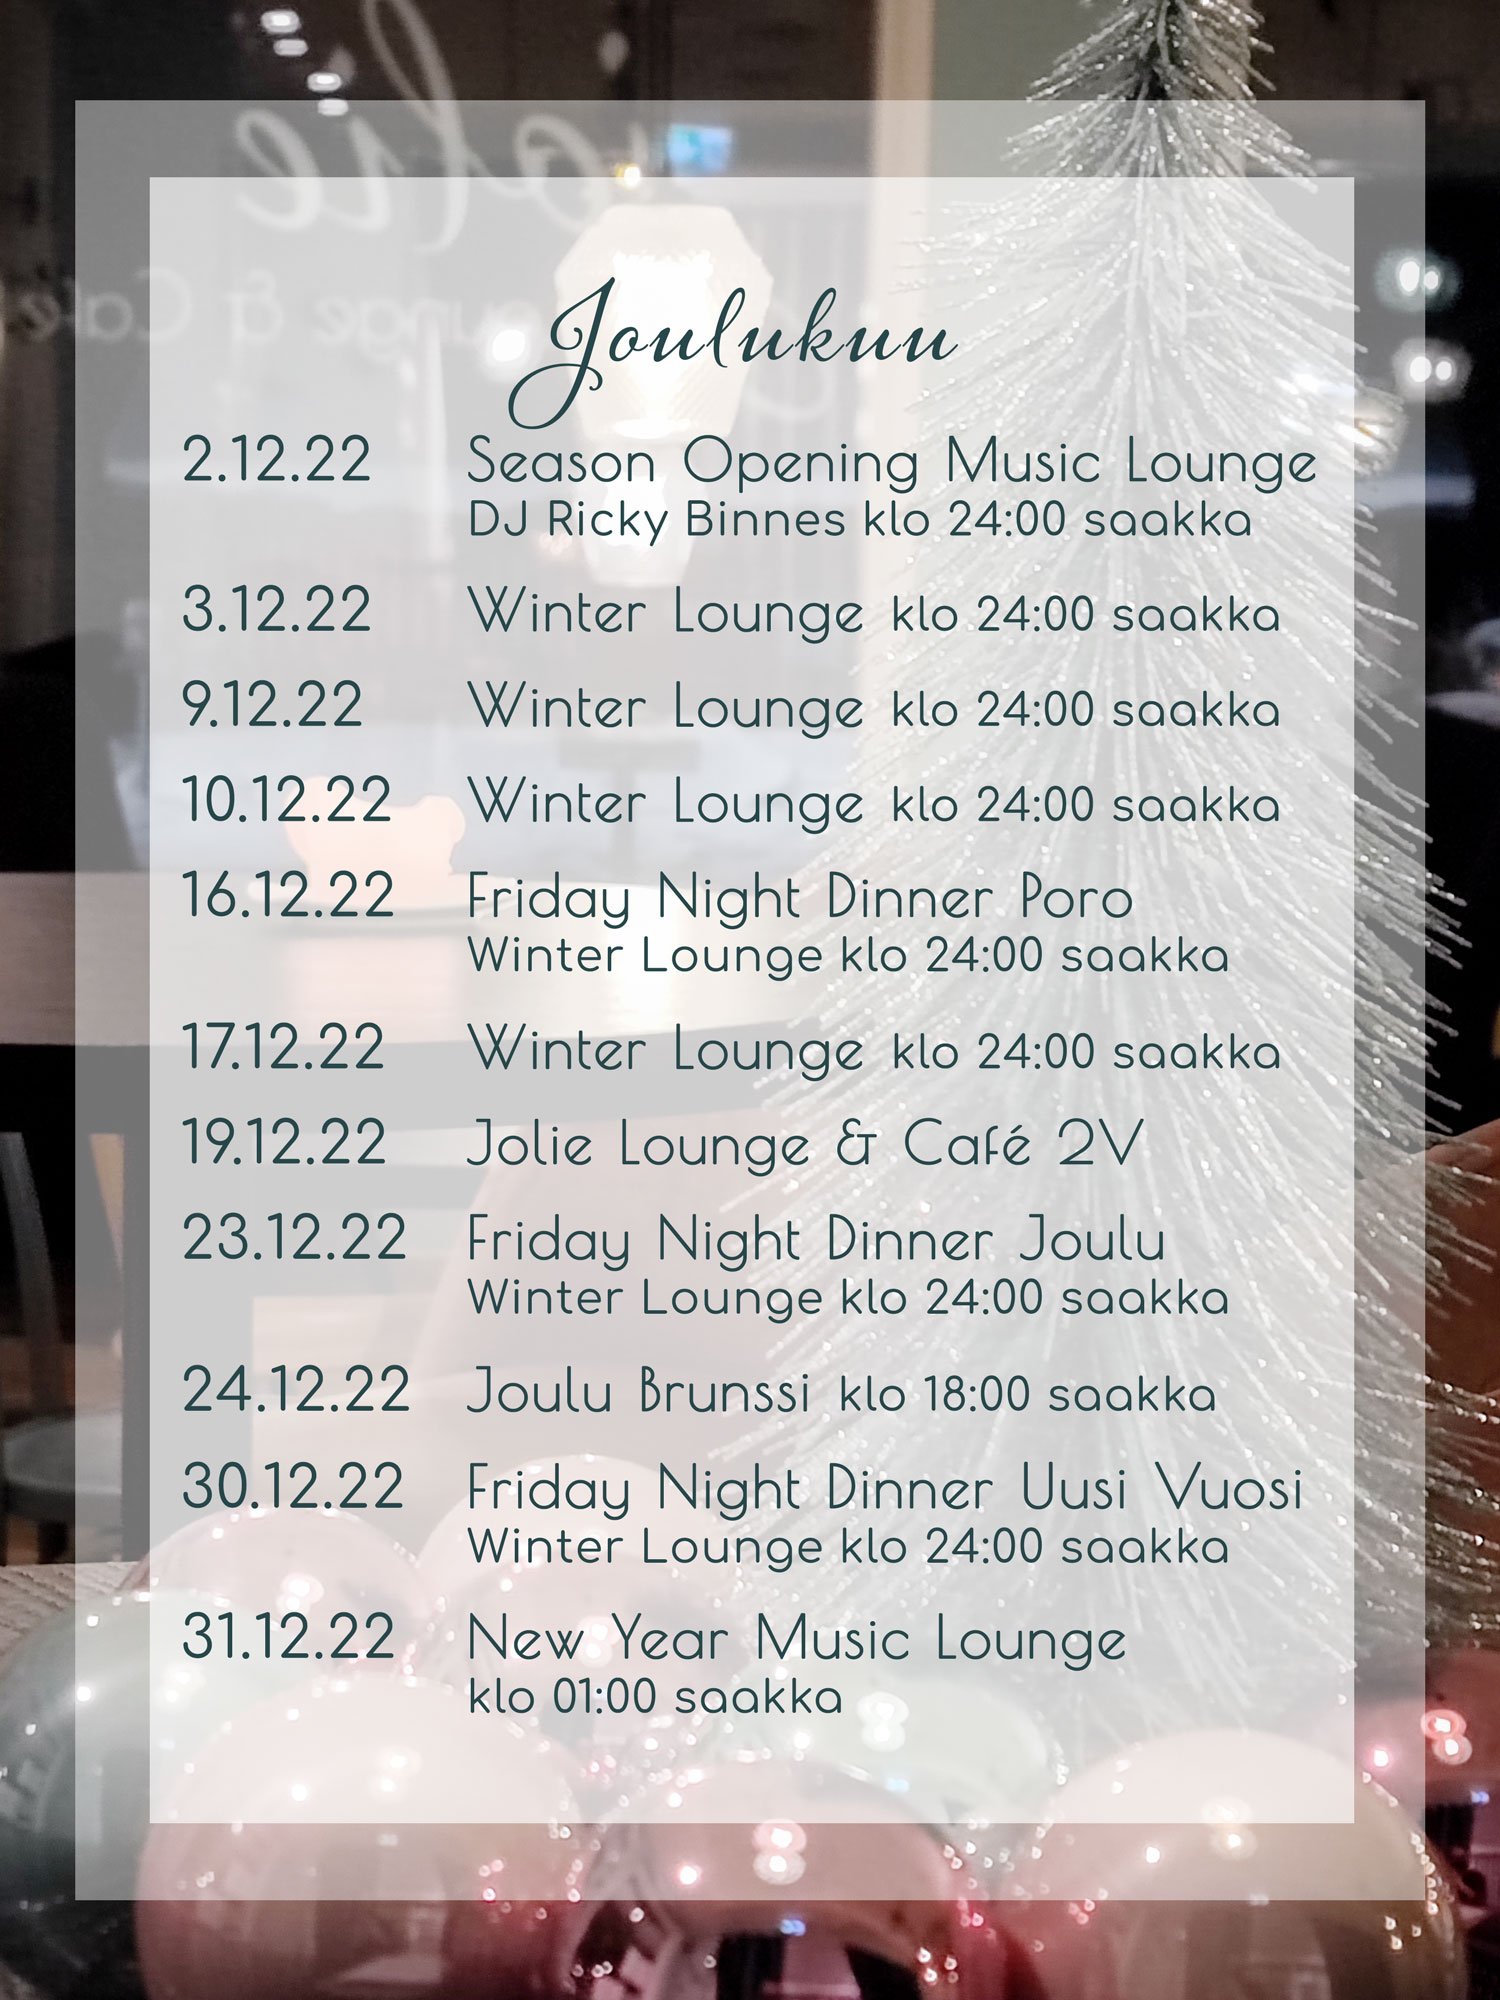 Jolie Lounge & Café tapahtumat joulukuu 2022